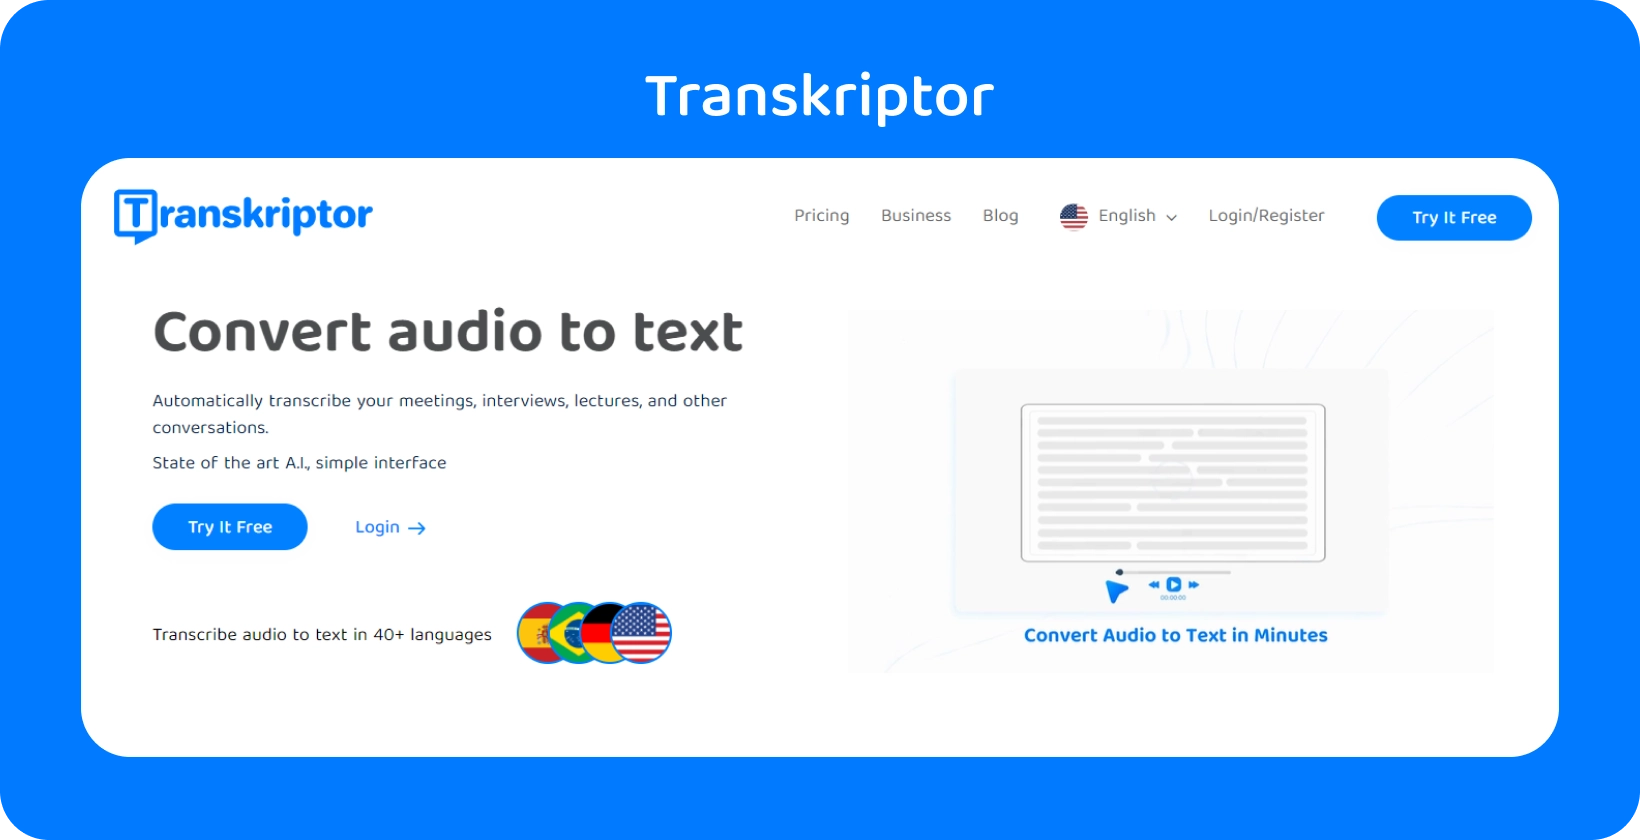 La interfaz de Transkriptor muestra la conversión de audio a texto, soportando más de 40 idiomas para diversos formatos de archivo.
